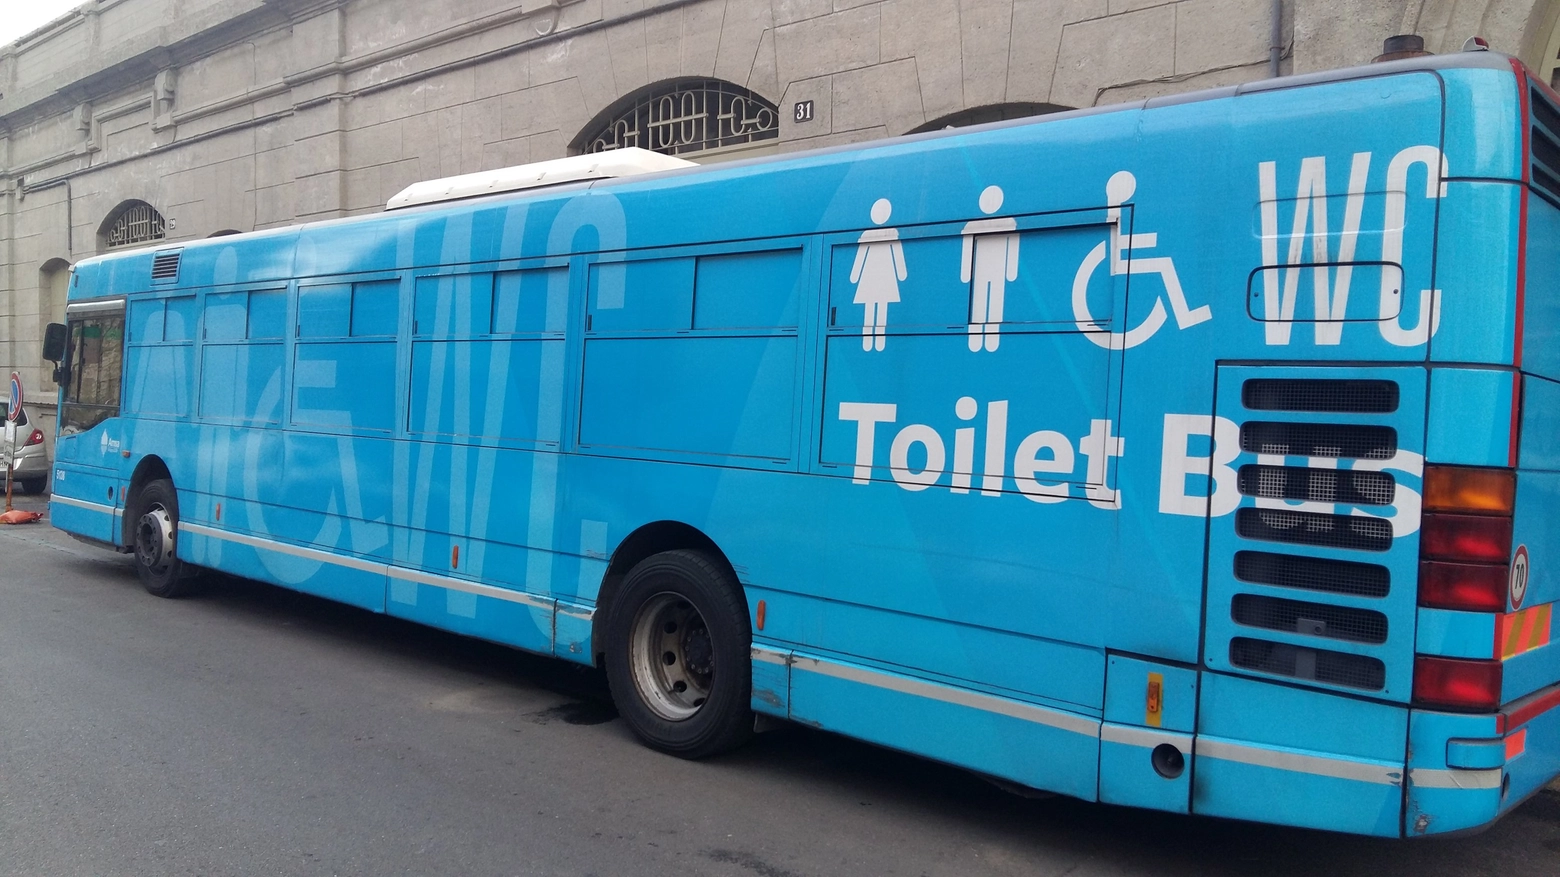 Toilet bus